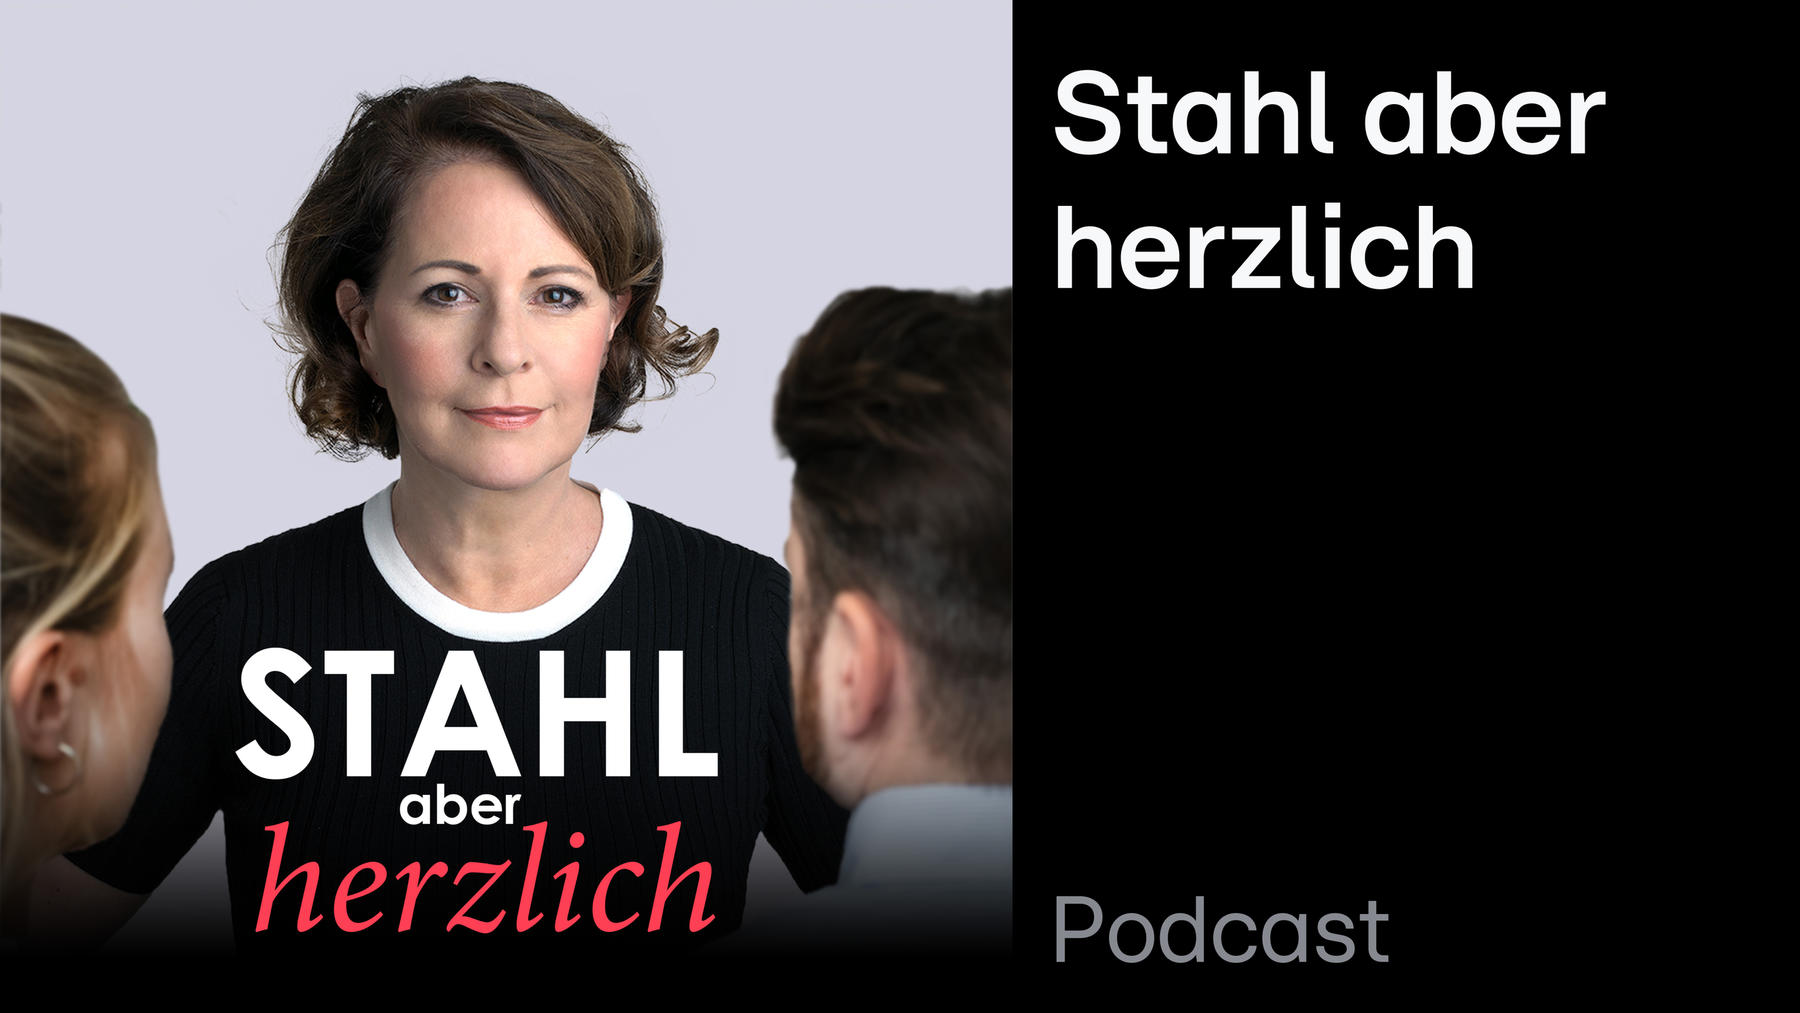 Podcast: Stahl aber herzlich